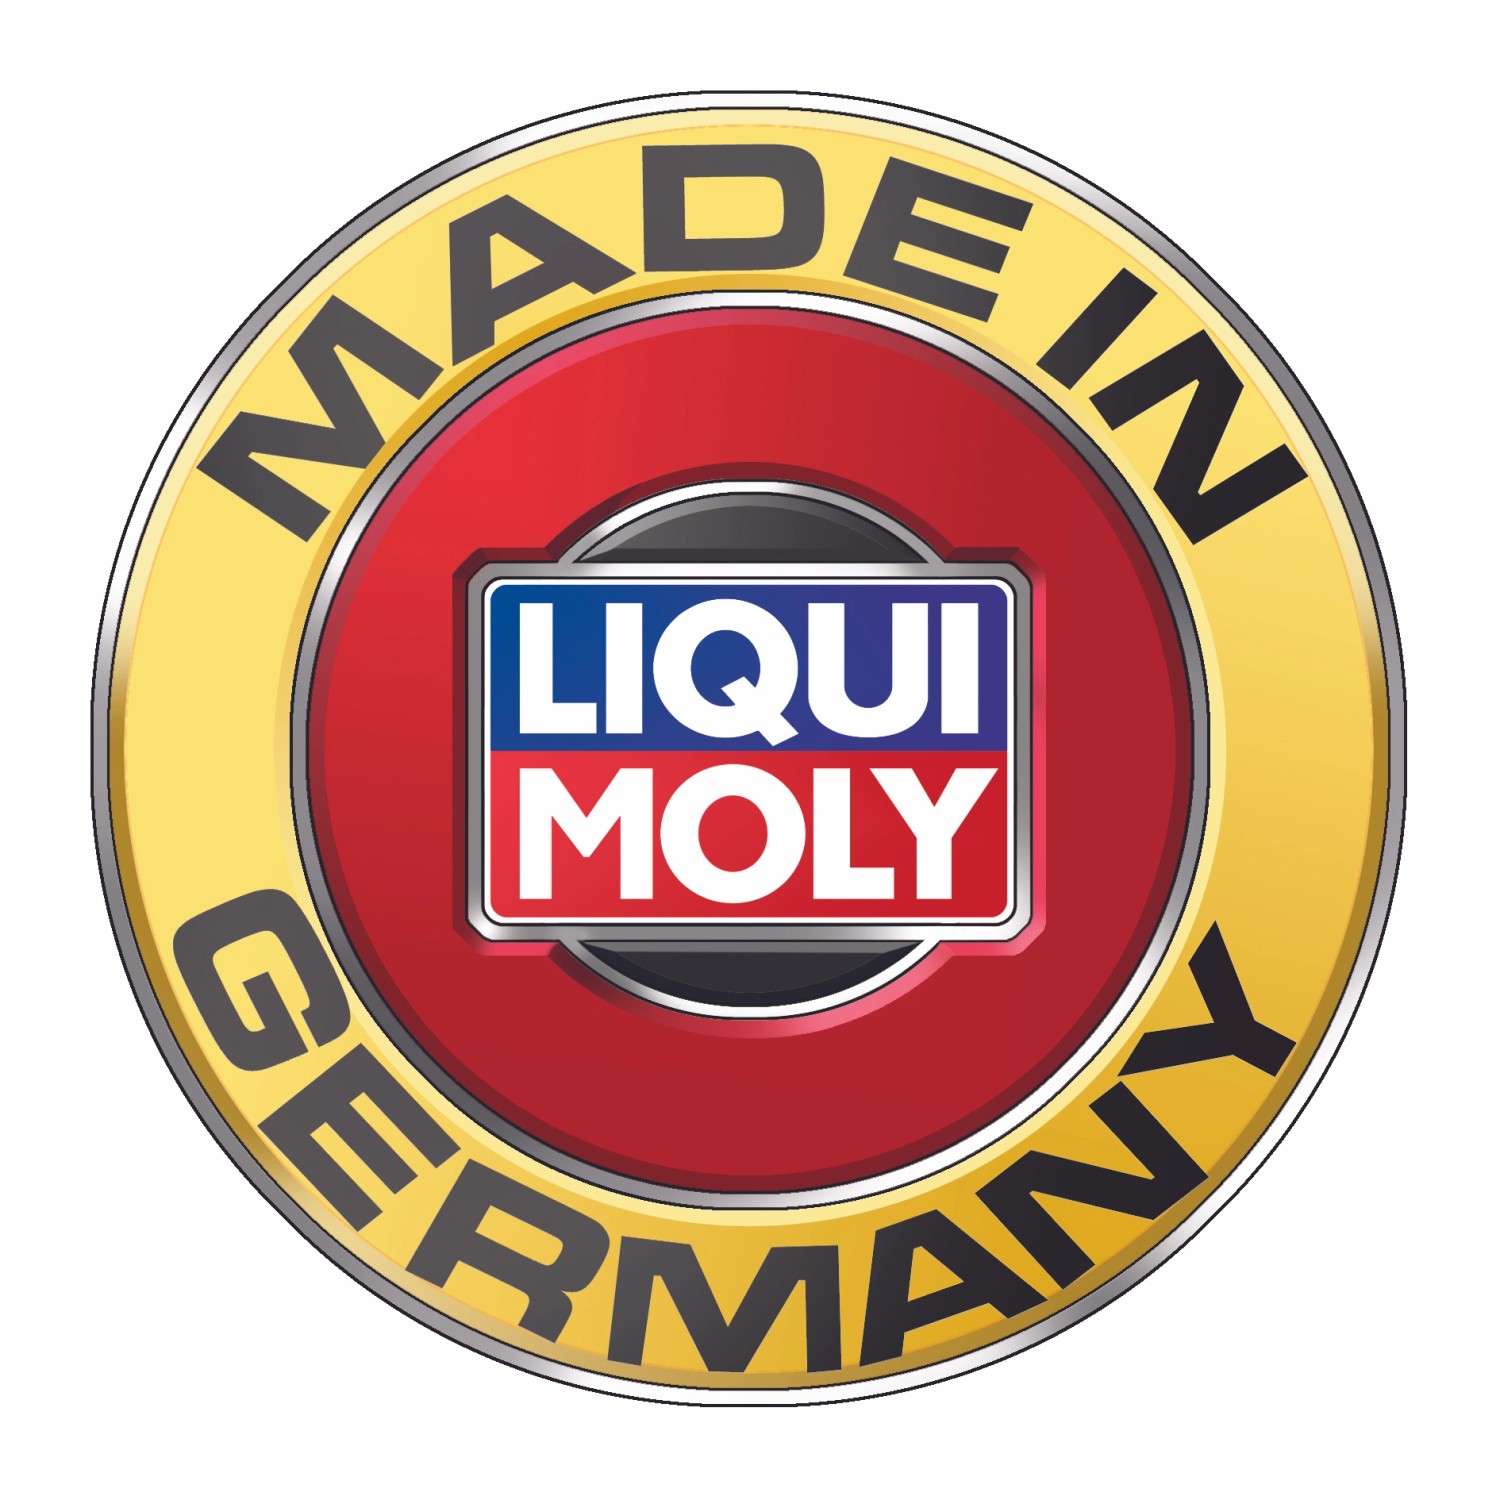 Liqui Moly Diesel Spülung, 500 ml kaufen bei OBI